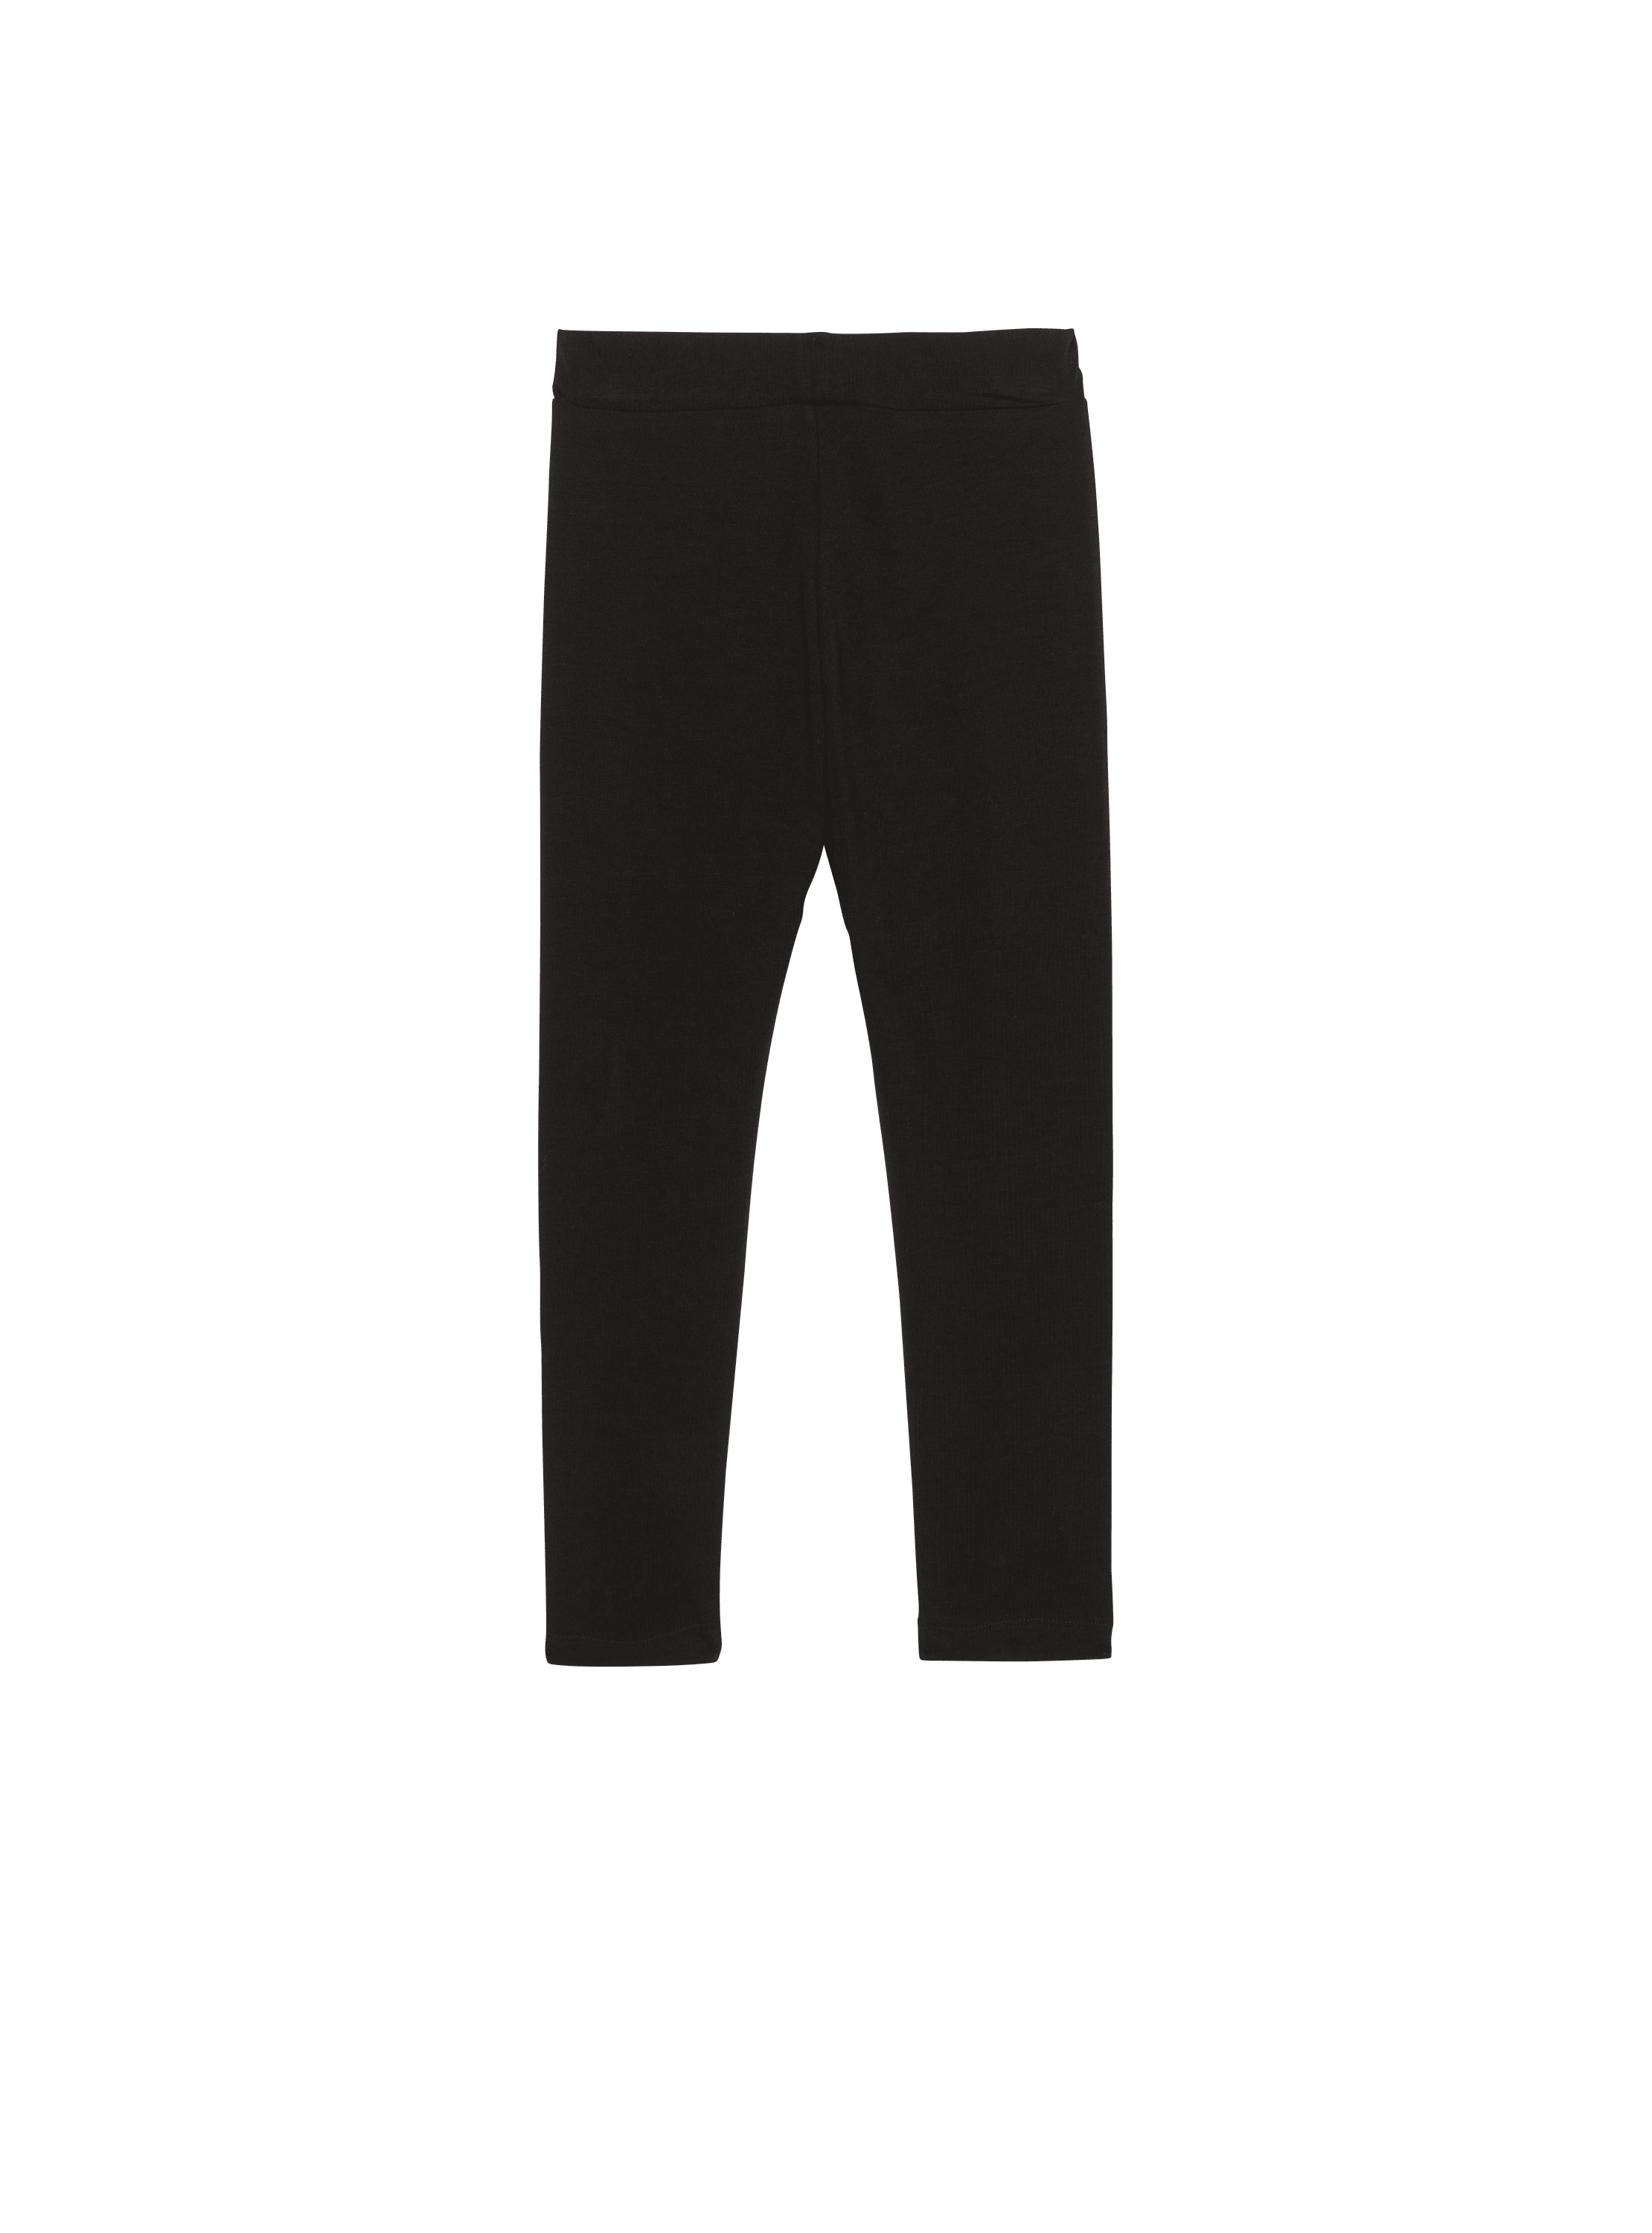 Balmain printed leggings - Women & Men